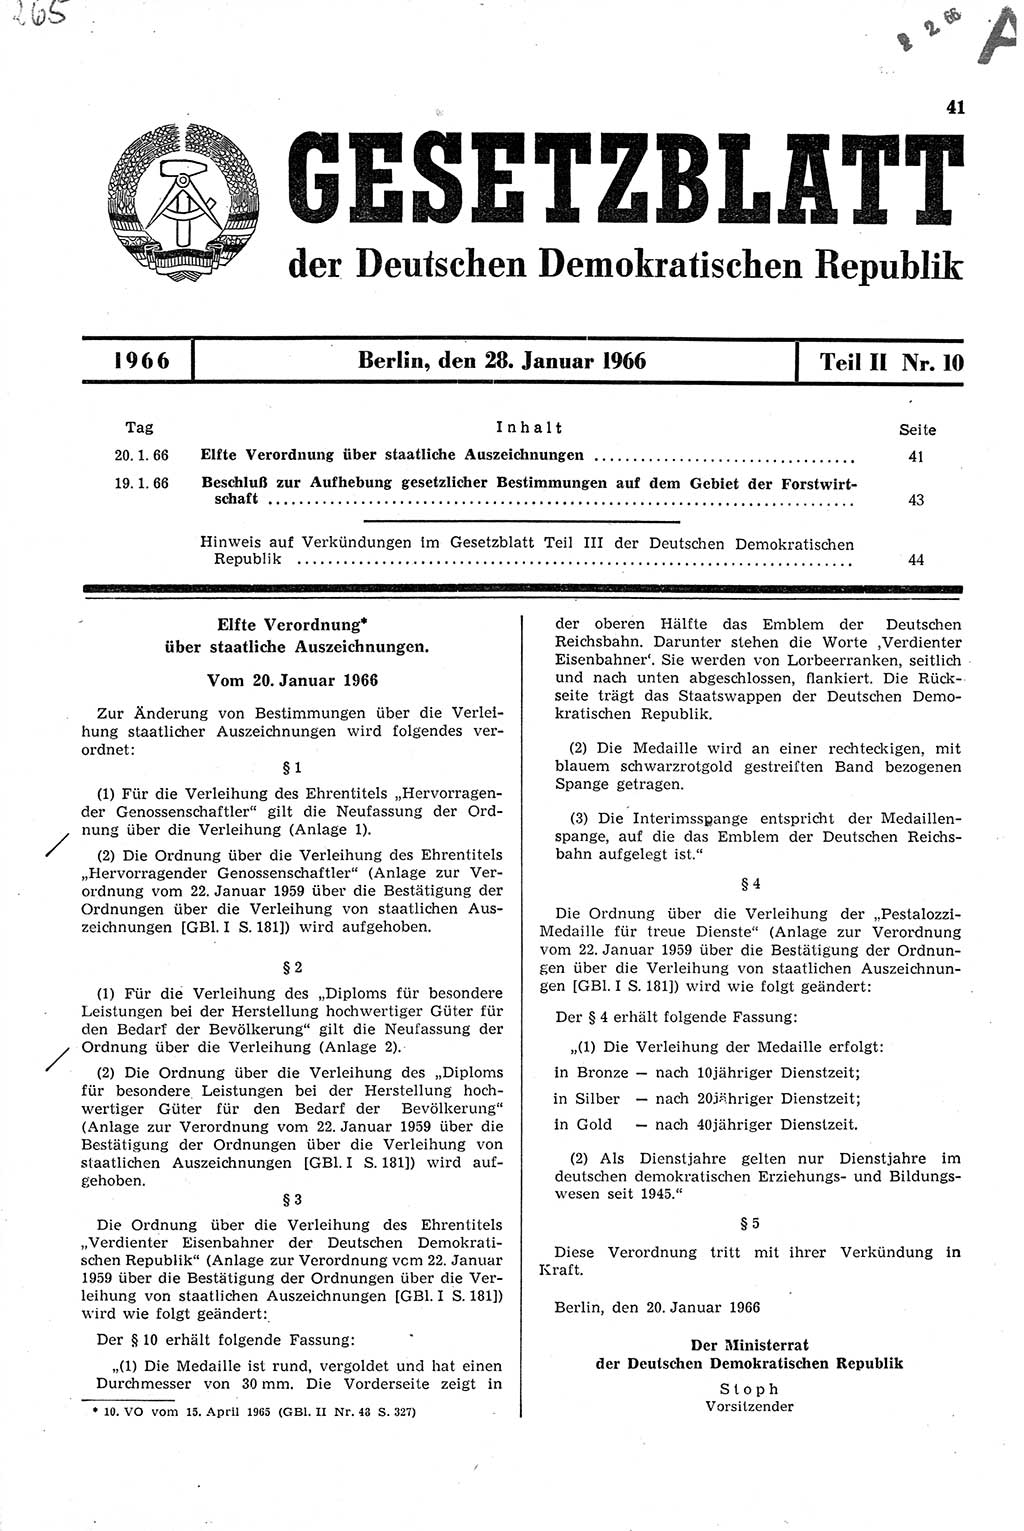 Gesetzblatt (GBl.) der Deutschen Demokratischen Republik (DDR) Teil ⅠⅠ 1966, Seite 41 (GBl. DDR ⅠⅠ 1966, S. 41)